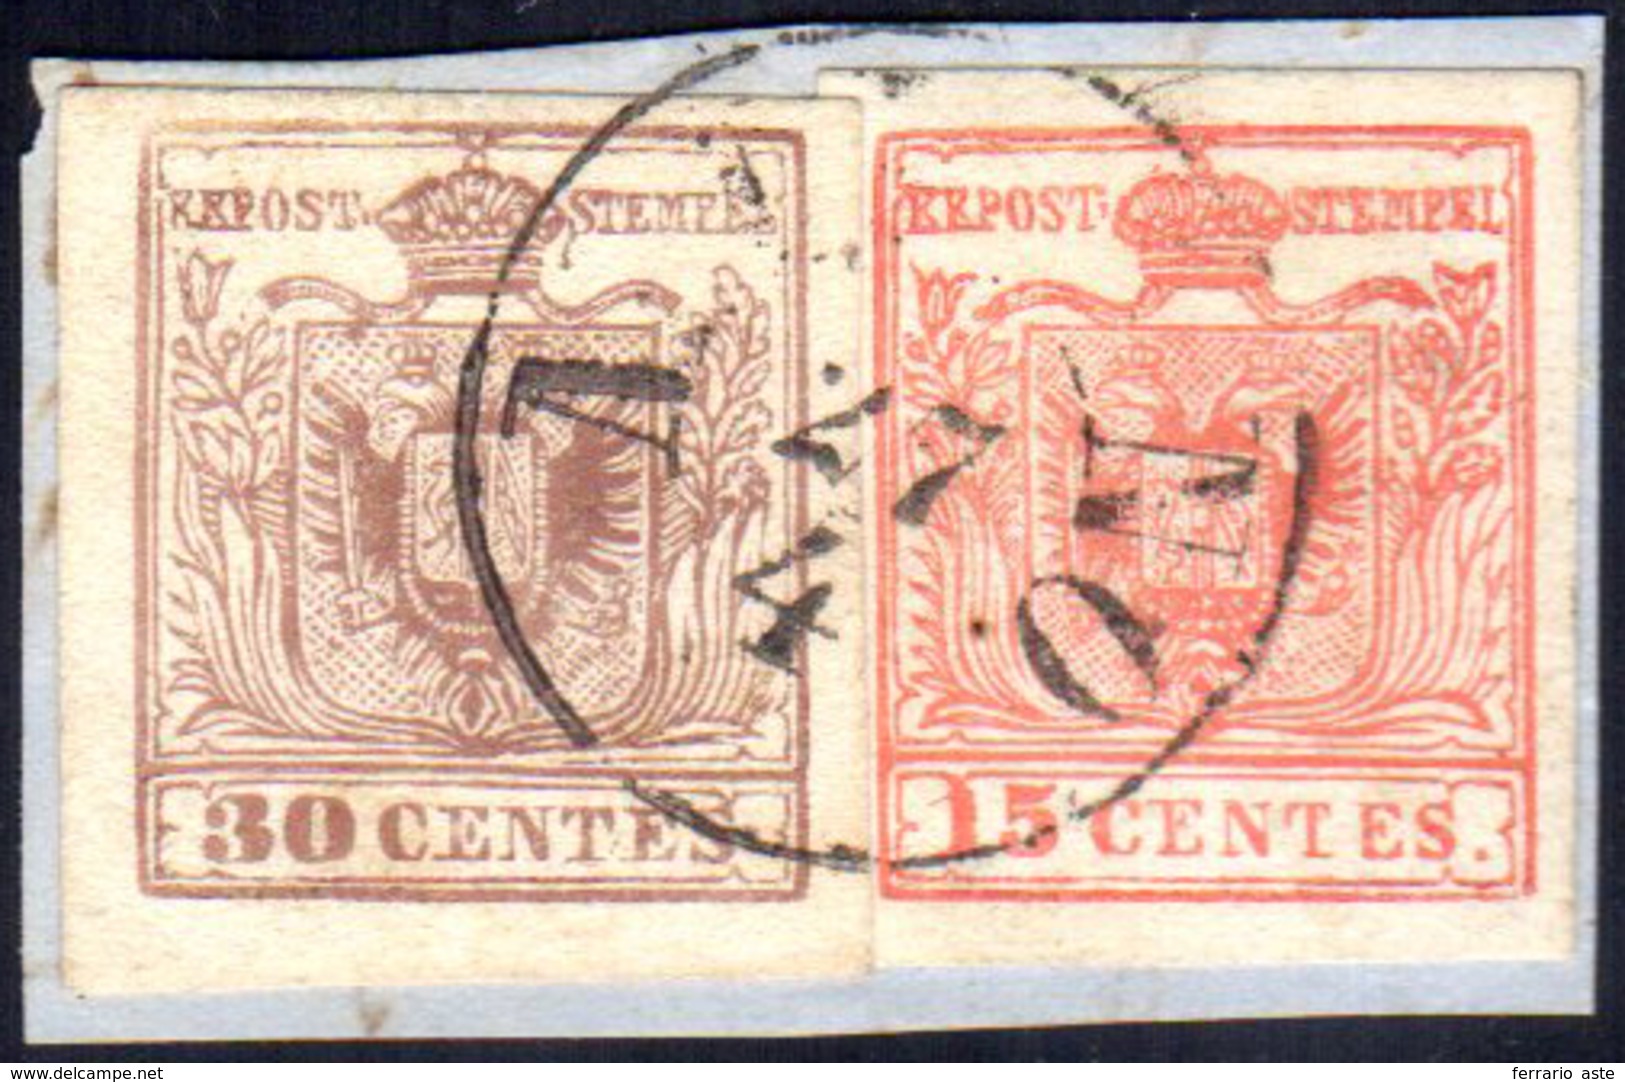 FALSI PER POSTA 1858 - 15 Cent. Rosso Vermiglio, II Tipo, 30 Cent. Bruno Rossastro, III Tipo, Entram... - Lombardy-Venetia